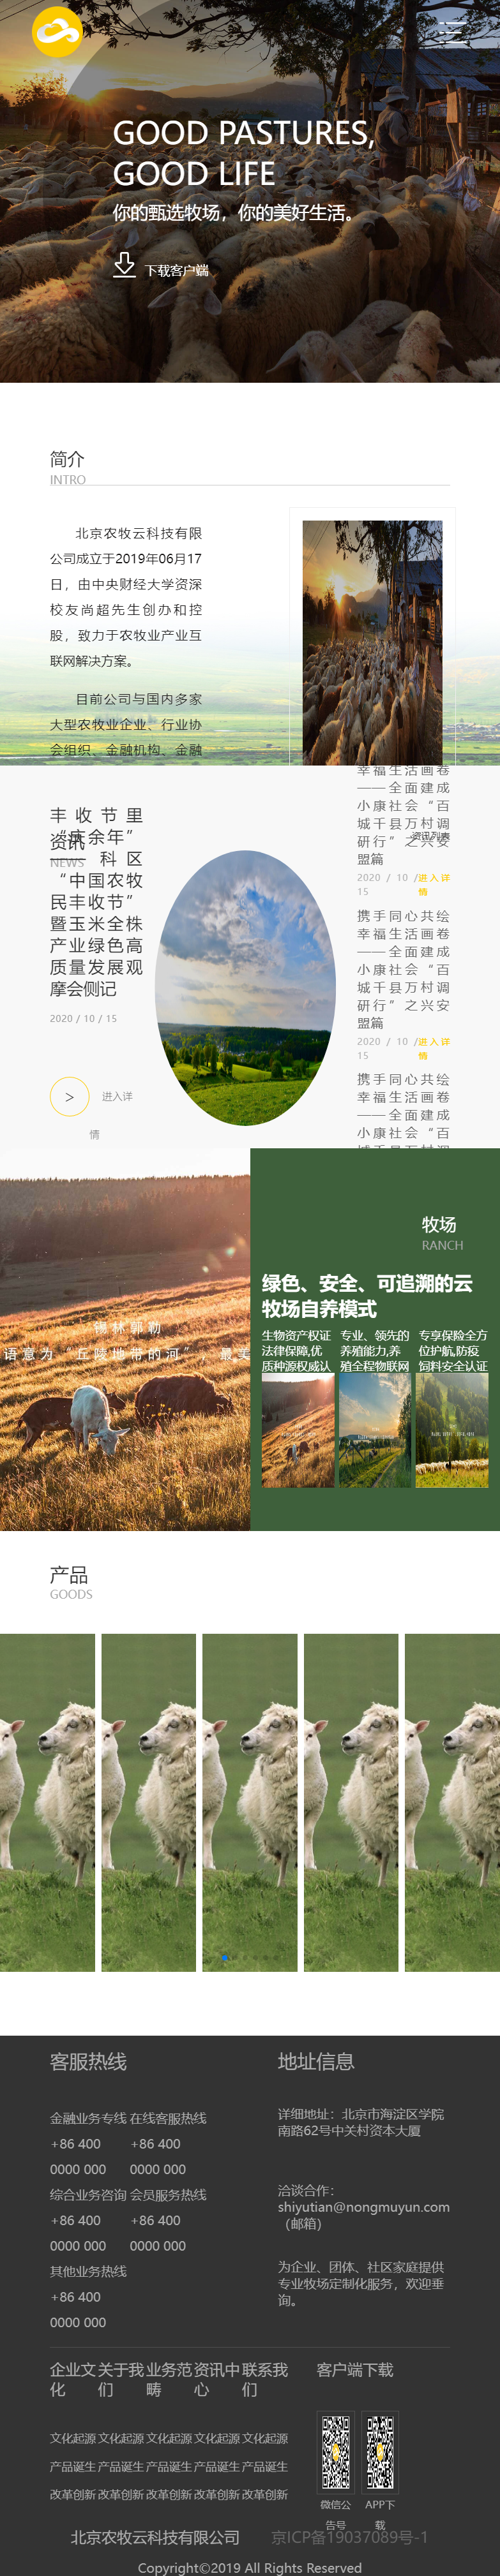 北京农牧云科技有限公司网站案例